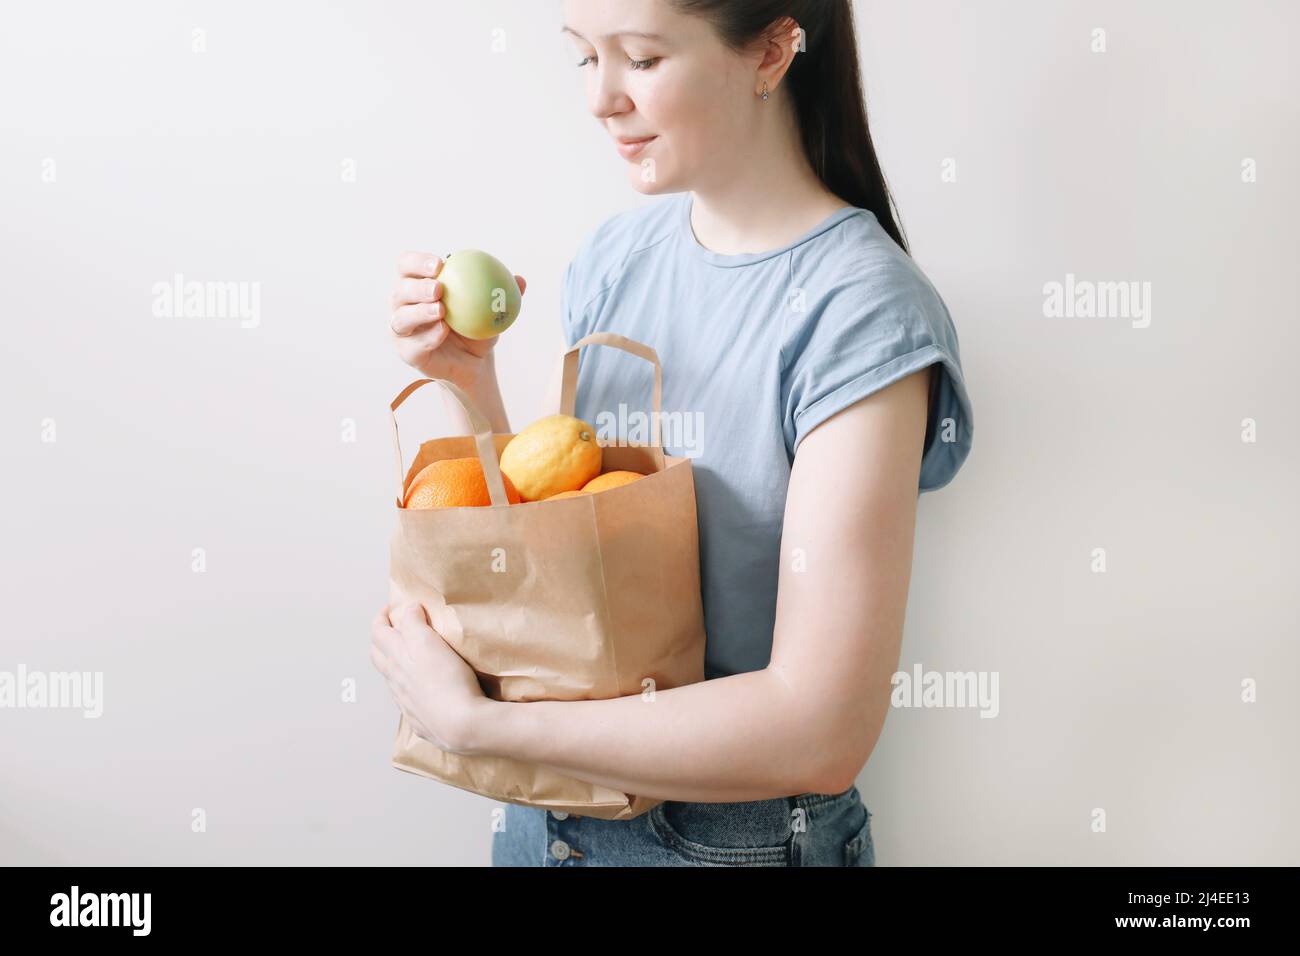 Einkaufen, gesunde Ernährung und umweltfreundliches Konzept - Nahaufnahme einer Frau mit Öko-Beutel mit Früchten auf weißem Hintergrund Stockfoto